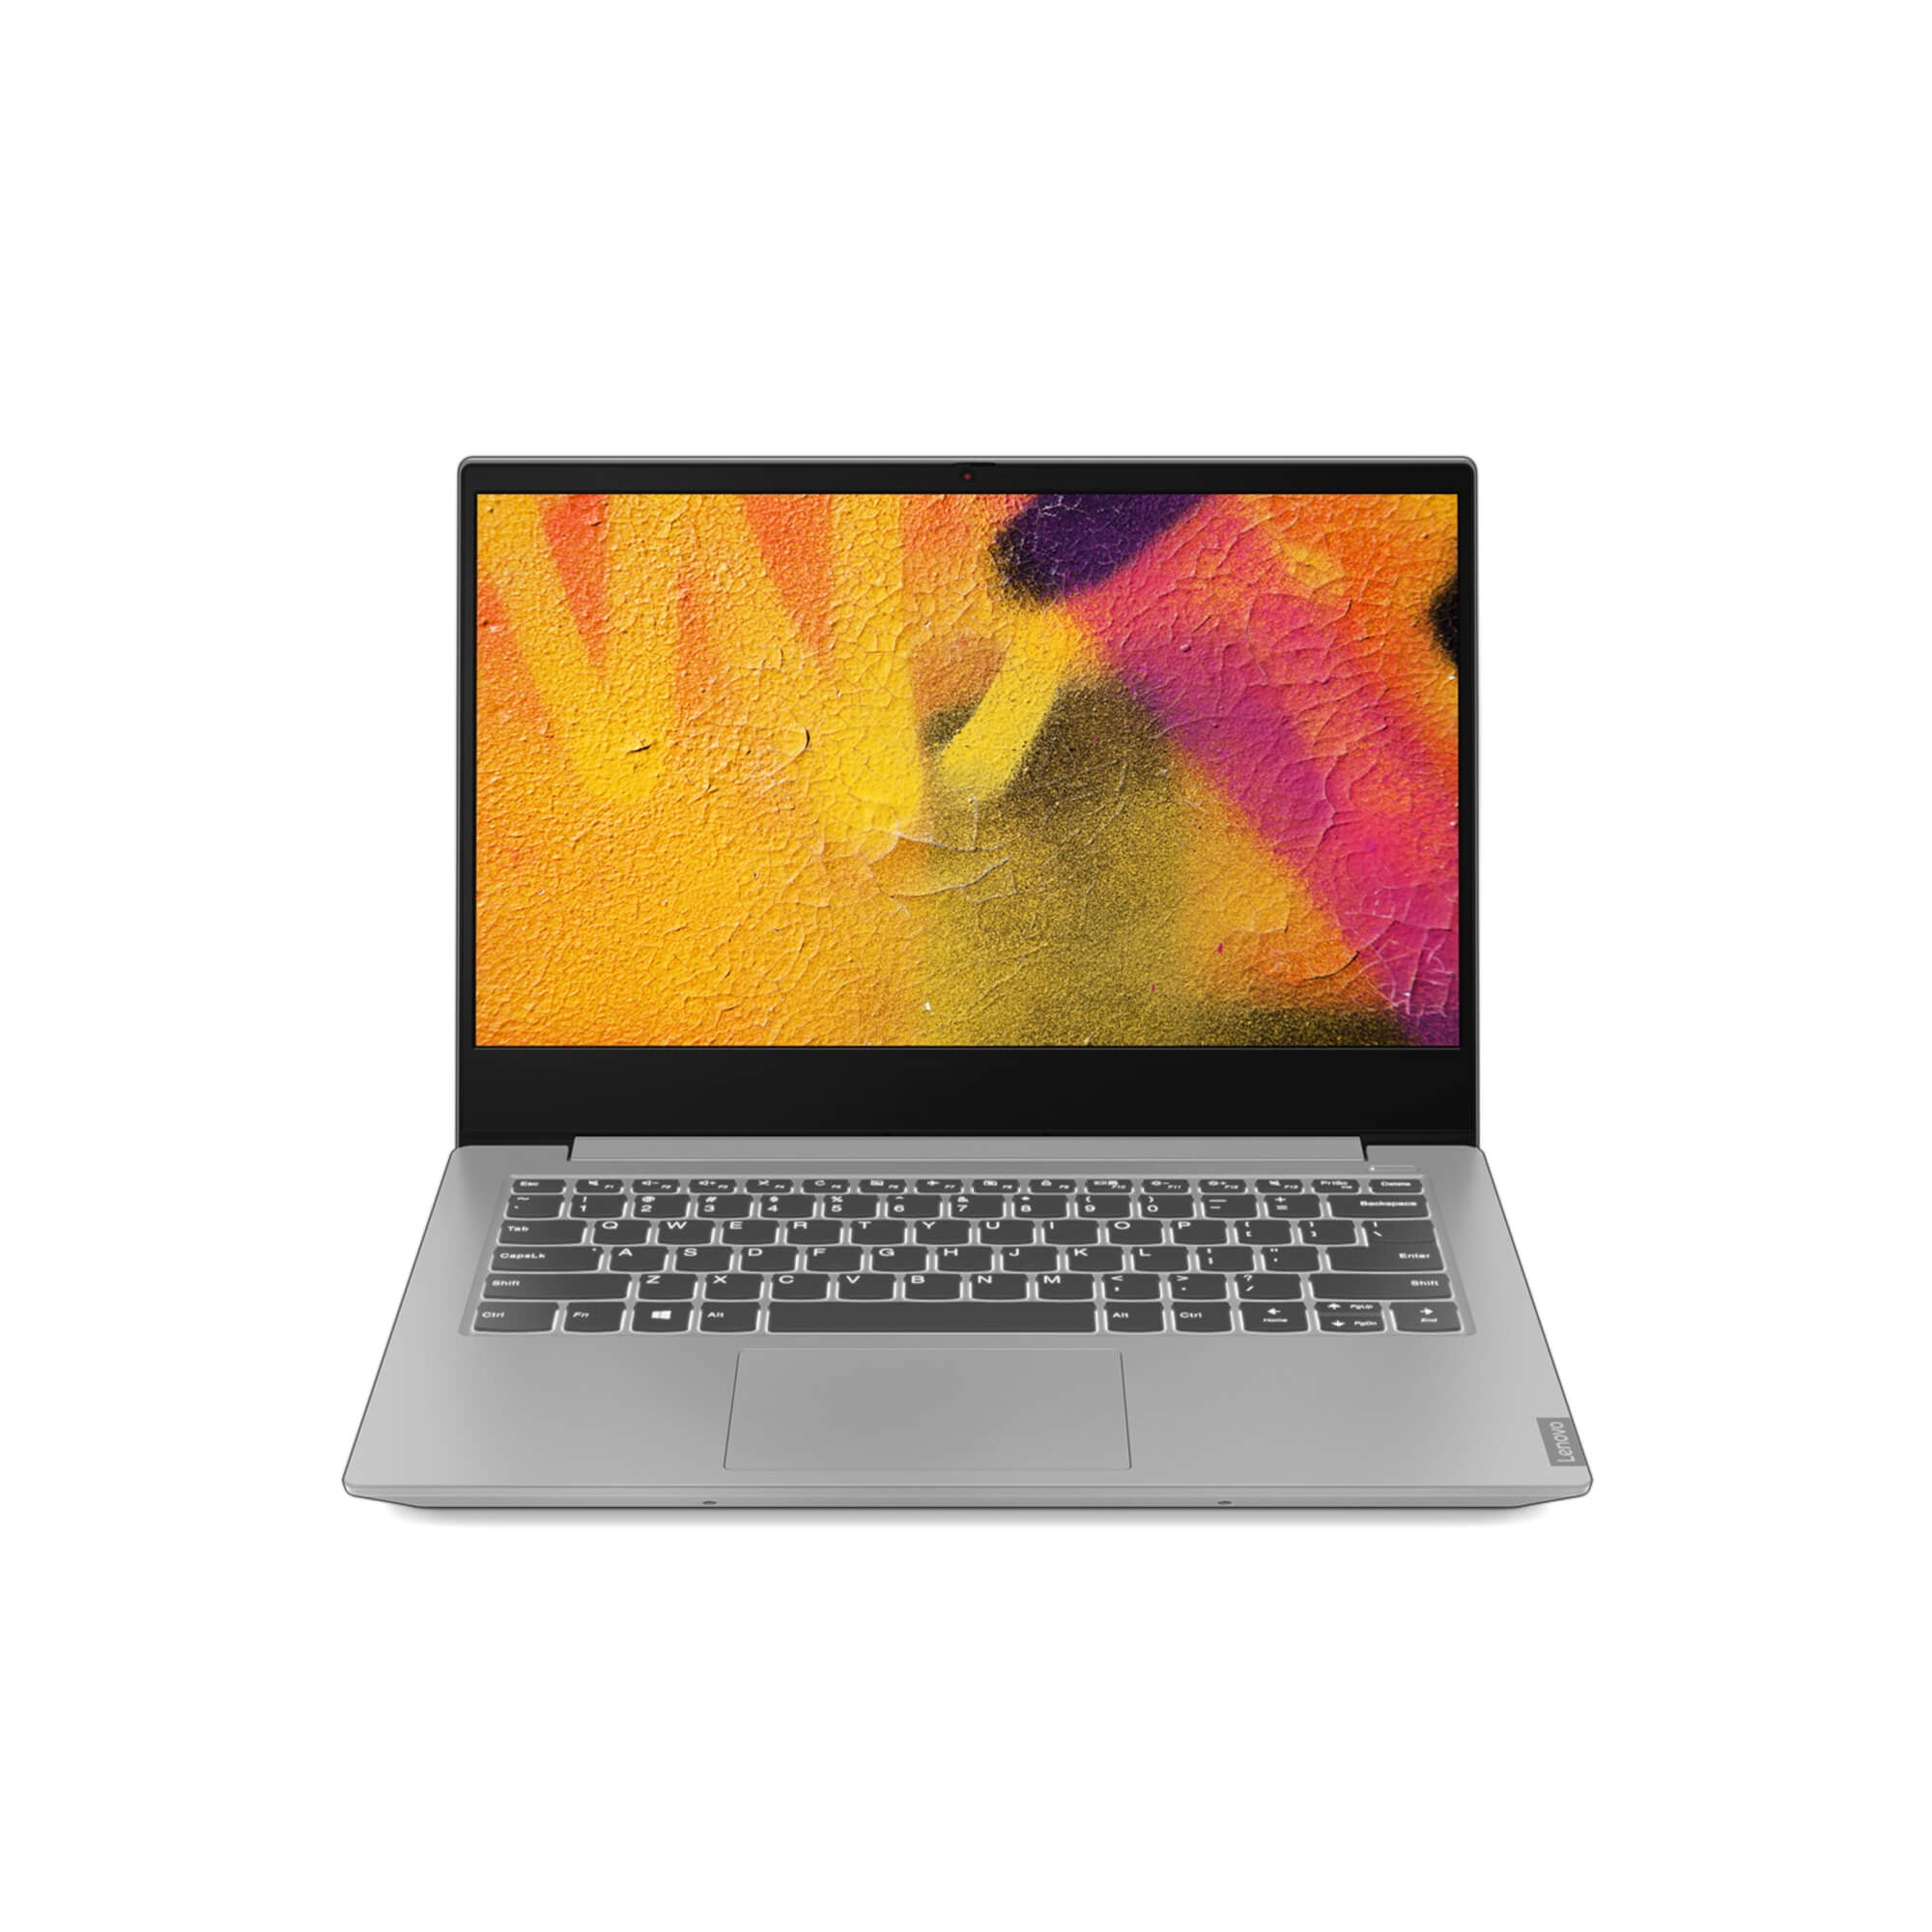 Lenovo IdeaPad S340 Laptop, 15.6